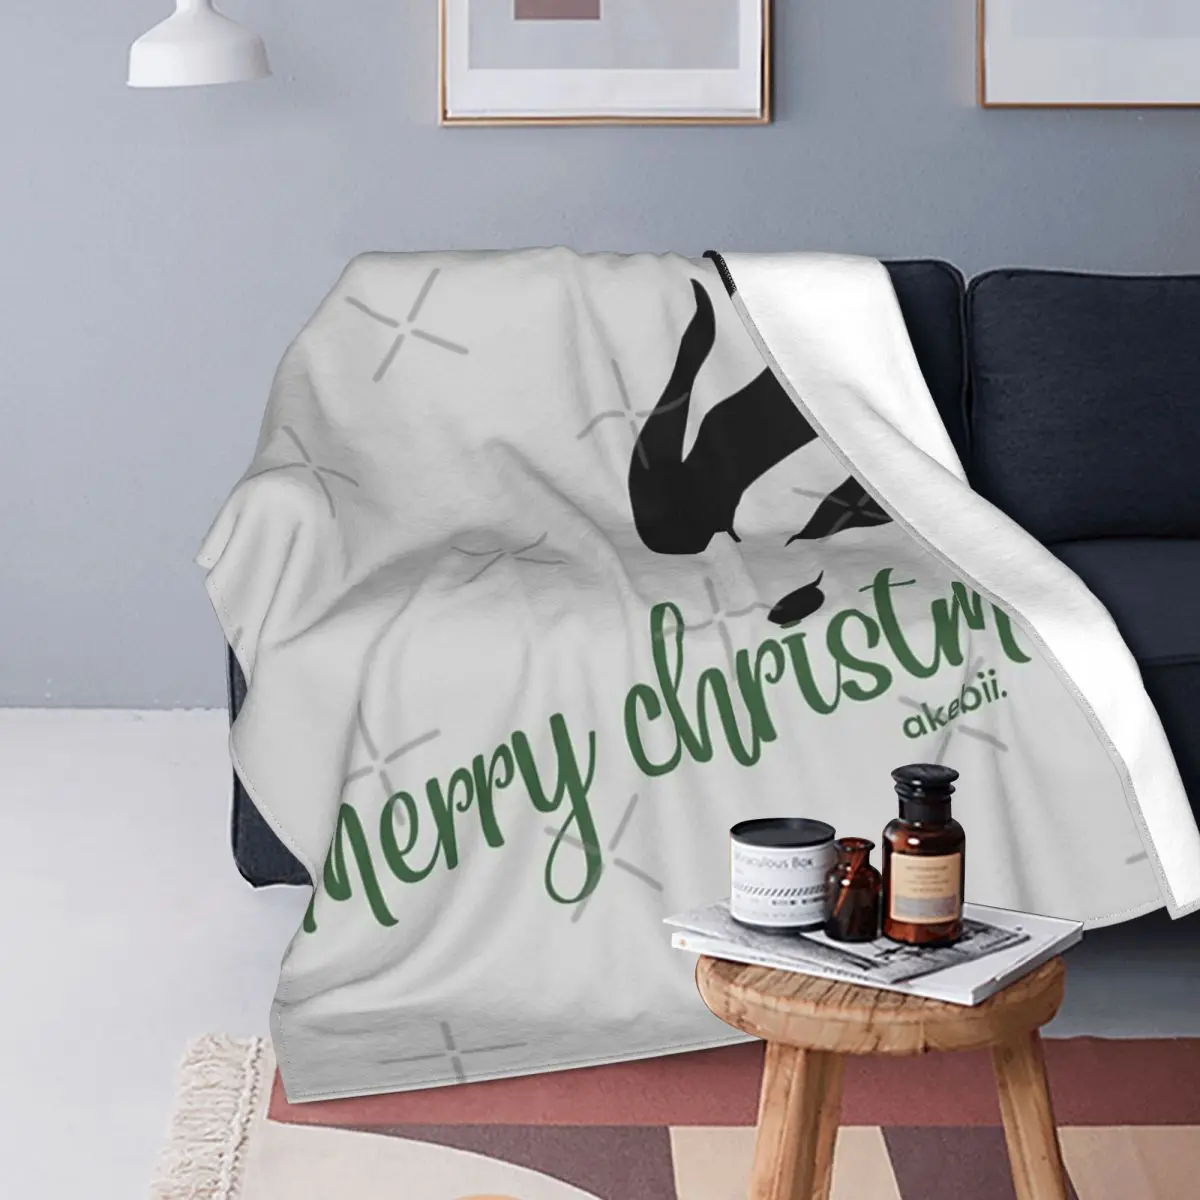 

Рождественское одеяло Akebii, покрывало для кровати, плед, муслиновое теплое одеяло в клетку, зимние покрывала для кровати